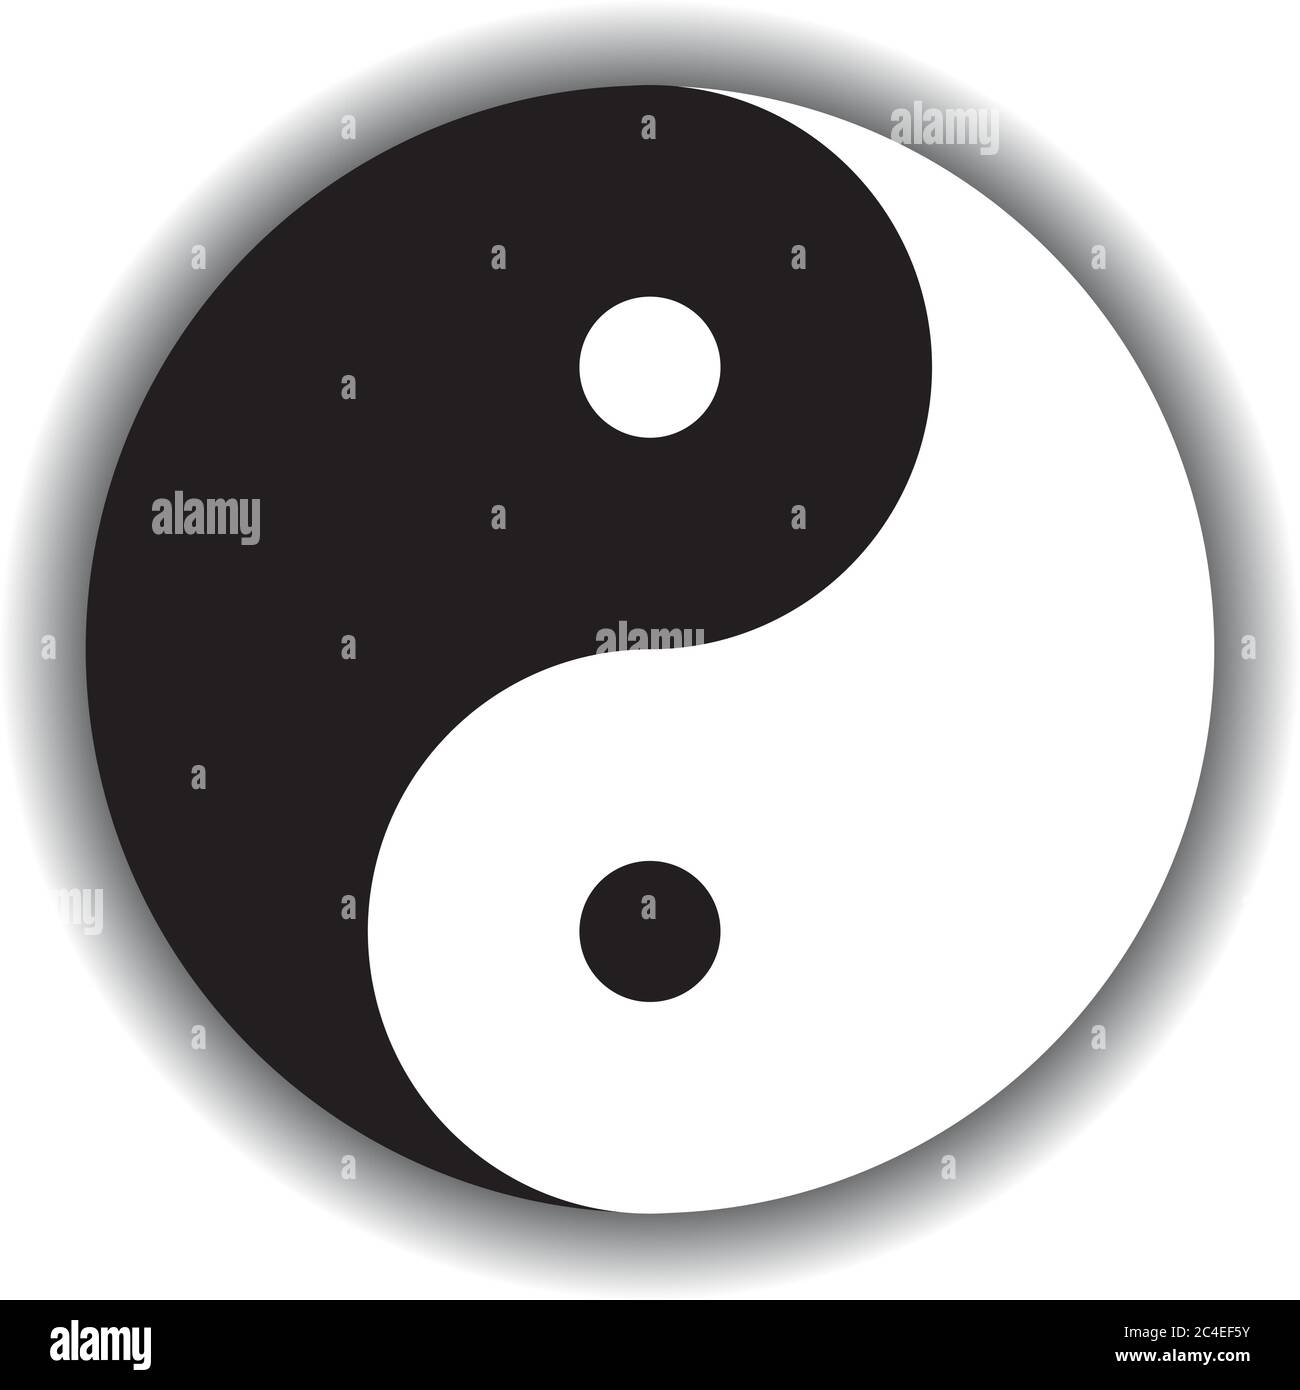 Le symbole Yin Yang, icône de la phylosophie chinoise, décrit comment les forces opposées et contraires peuvent être complémentaires, interconnectées et interdépendantes dans le monde naturel. Illustration noir et blanc avec ombre. Illustration de Vecteur